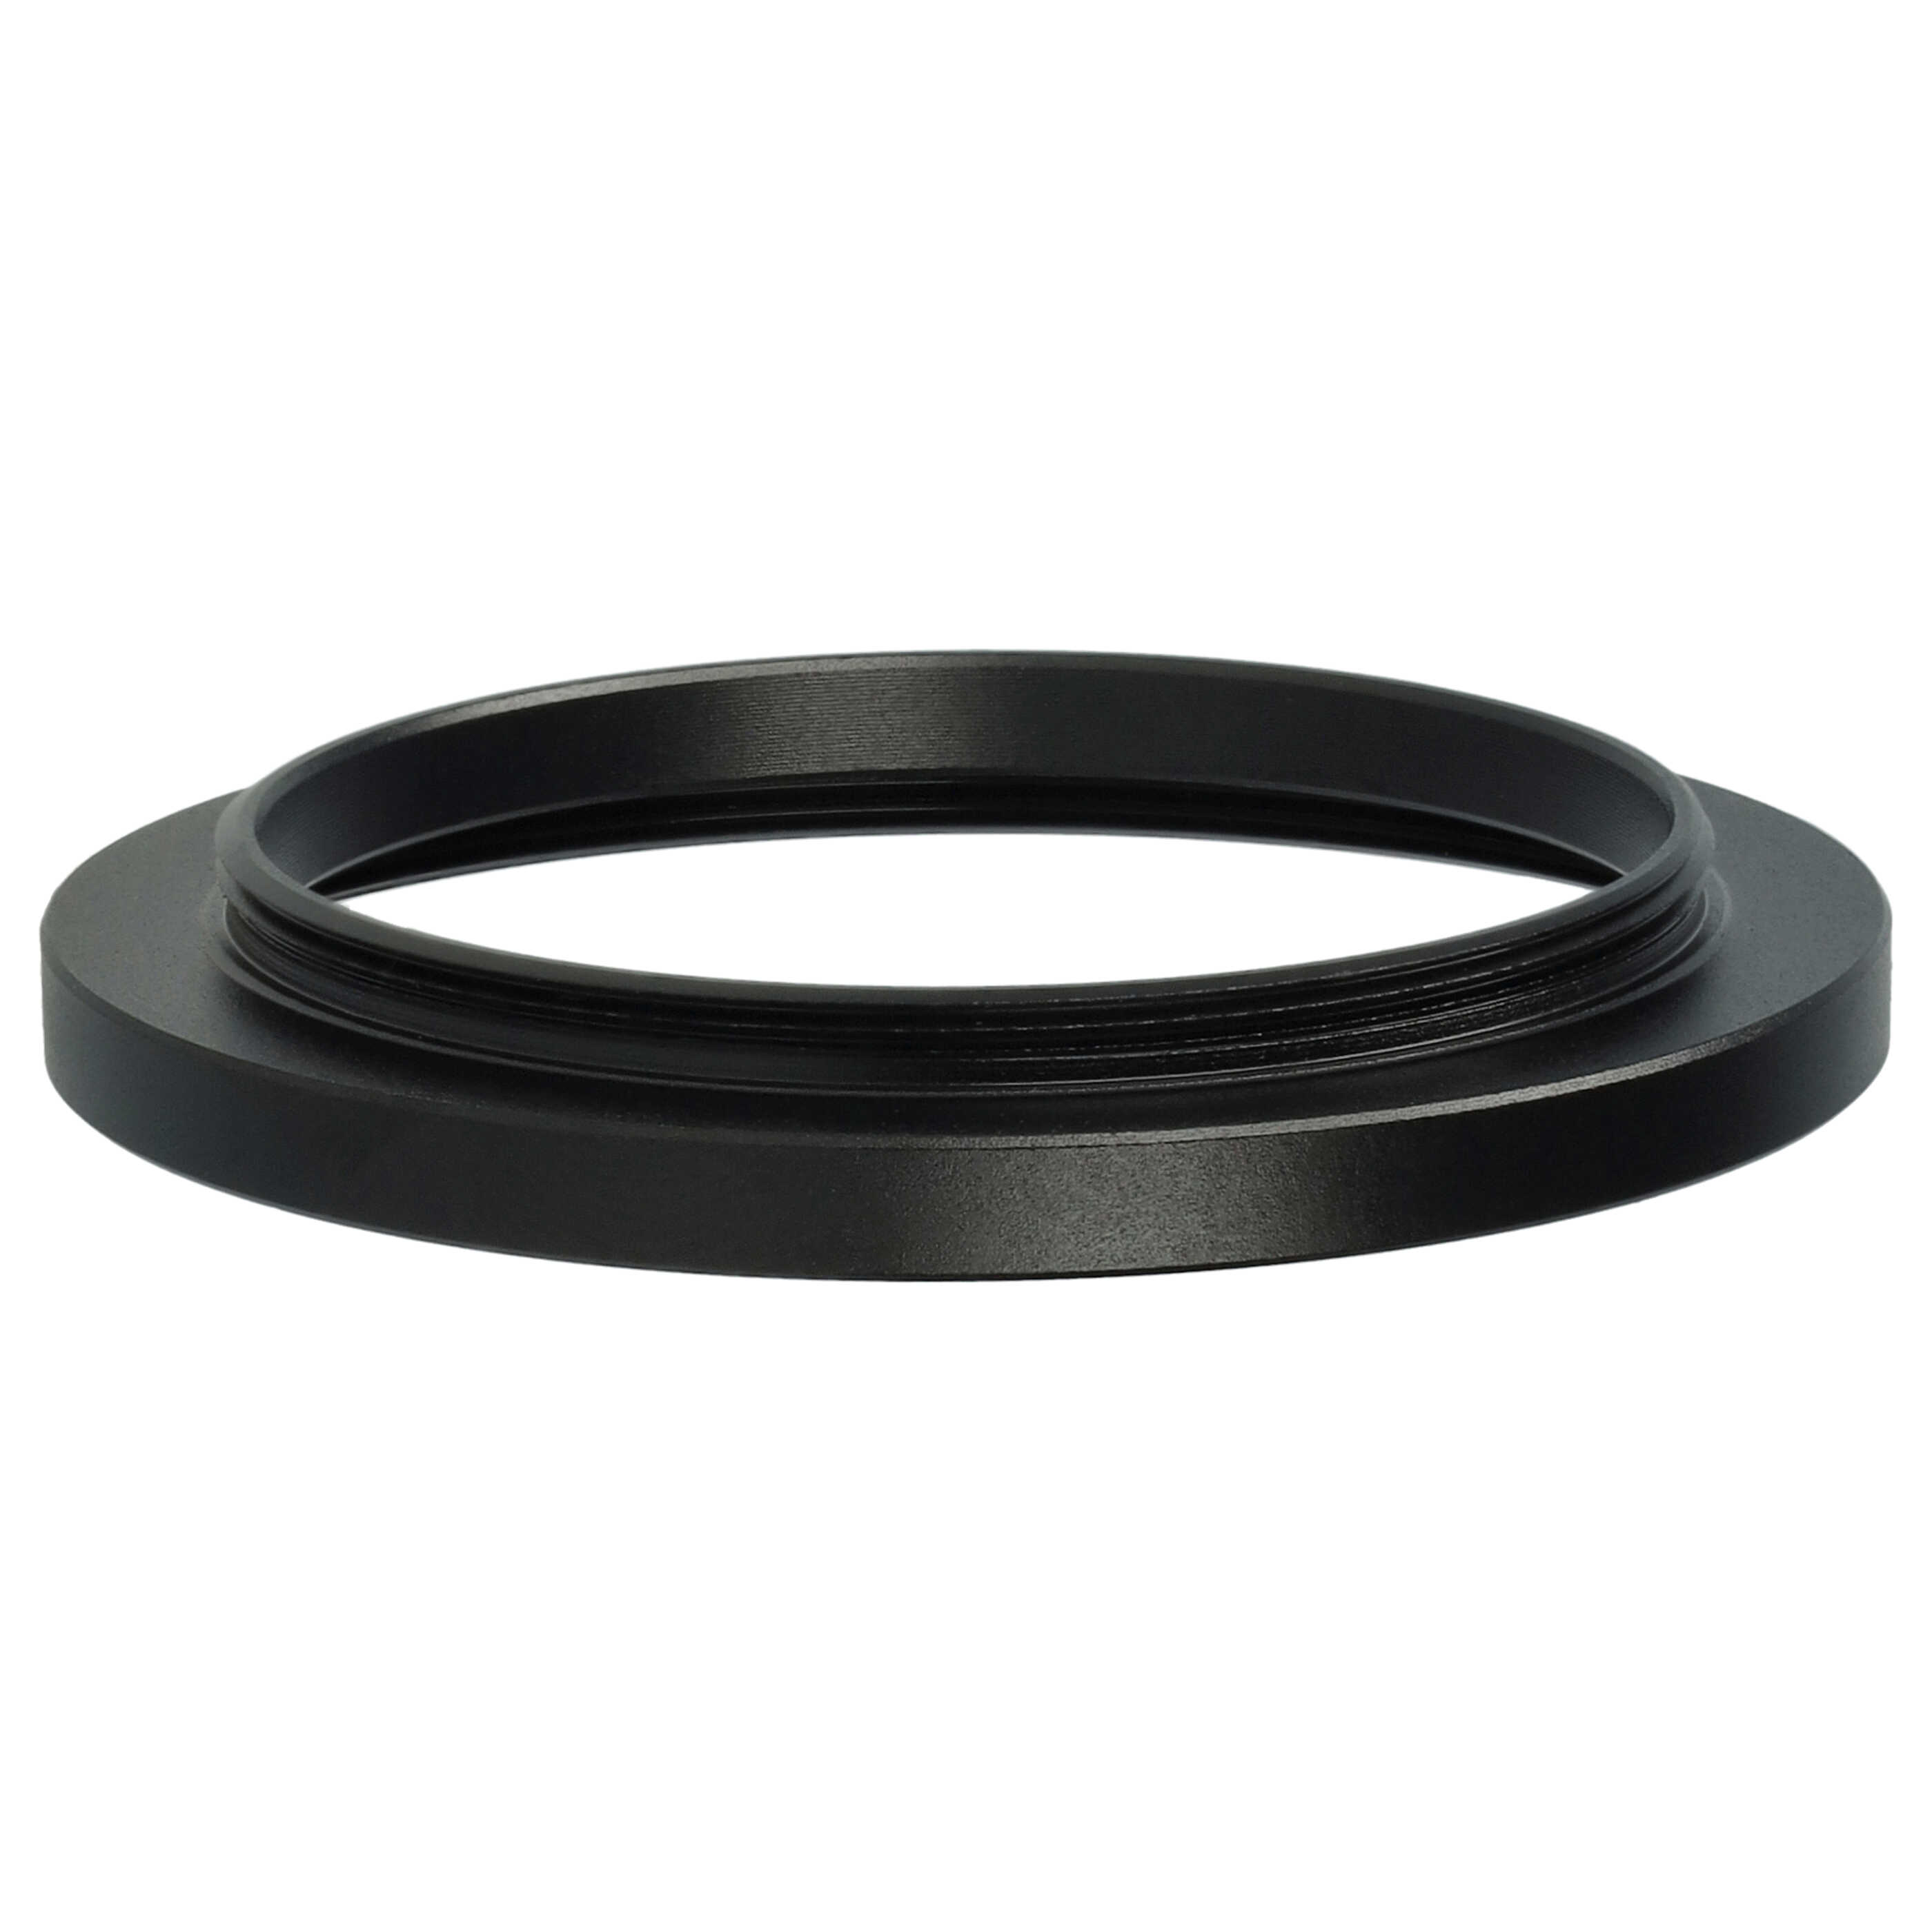 Step-Up-Ring Adapter 39 mm auf 46 mm passend für diverse Kamera-Objektive - Filteradapter